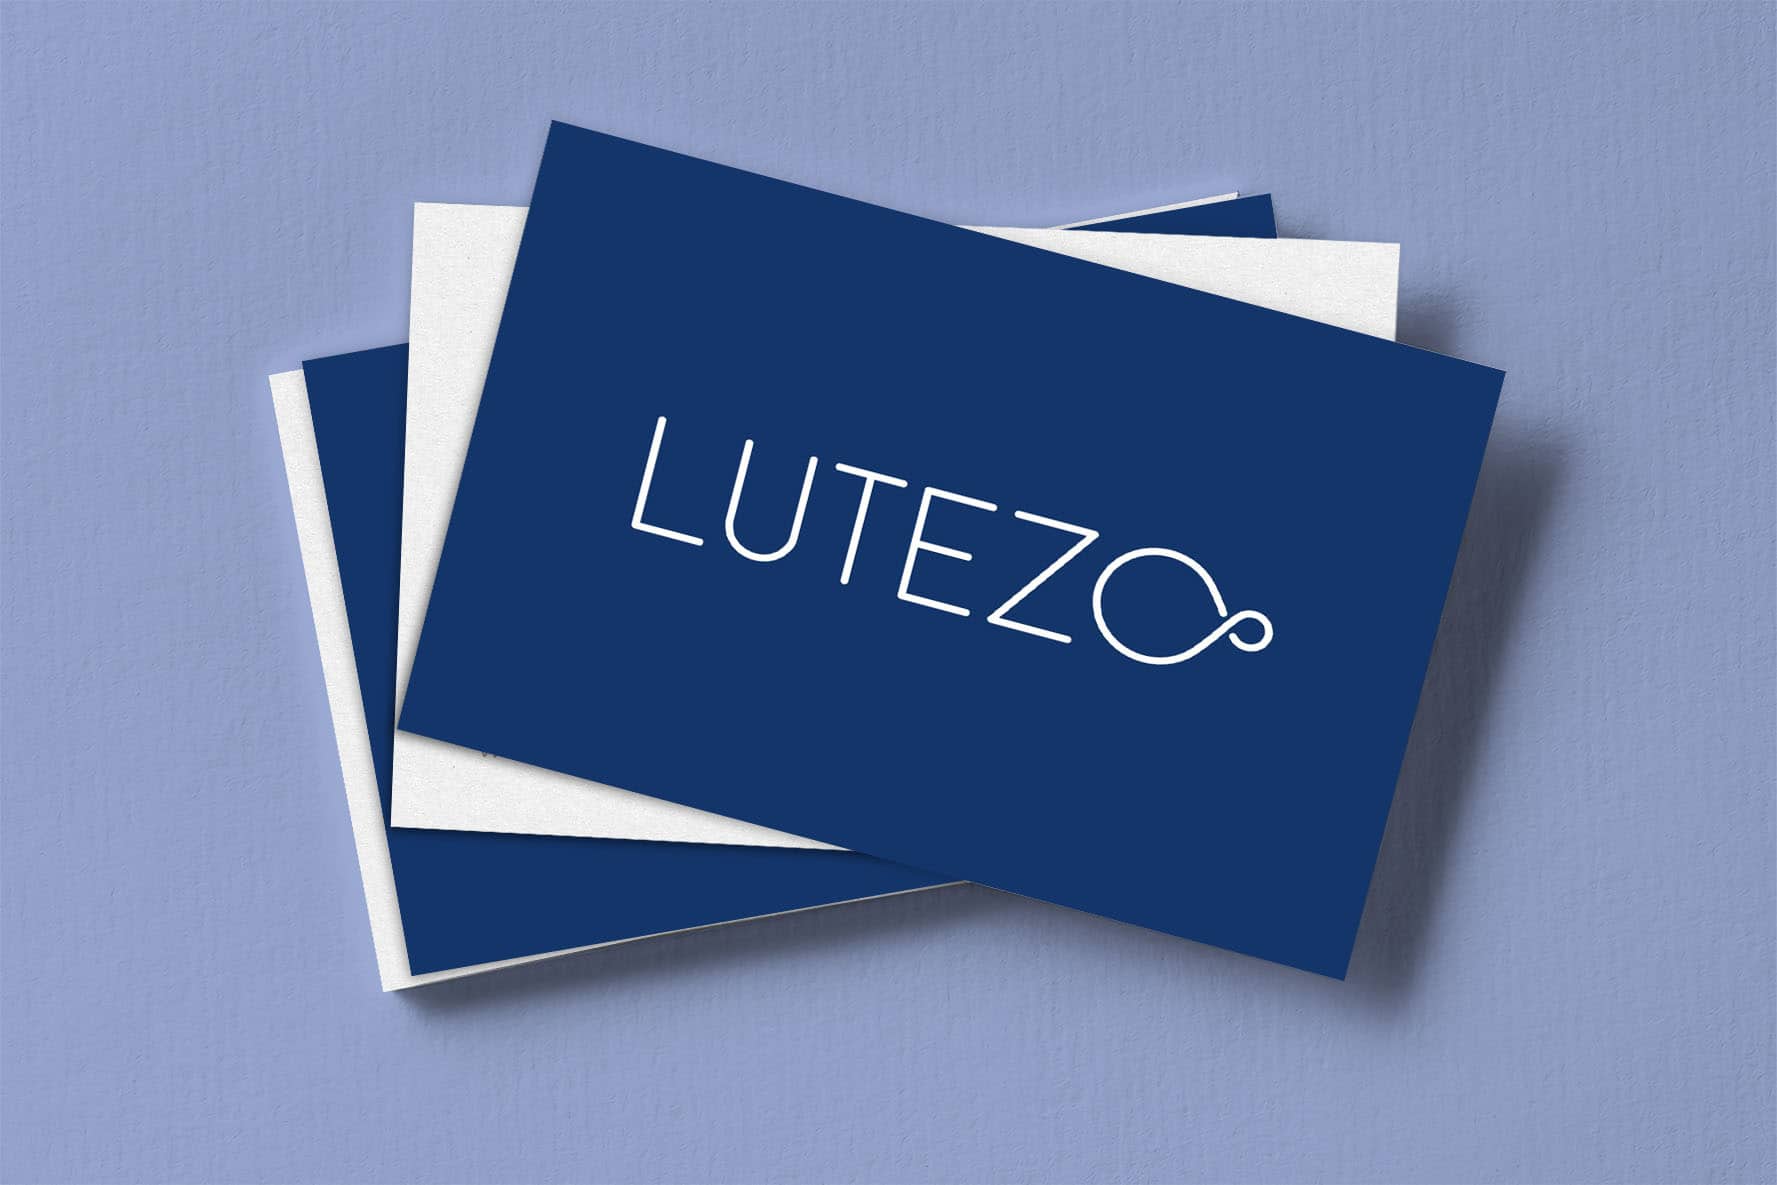 Identité graphique designée par JLF Agency pour Lutezo, cabinet d'ingénierie IT